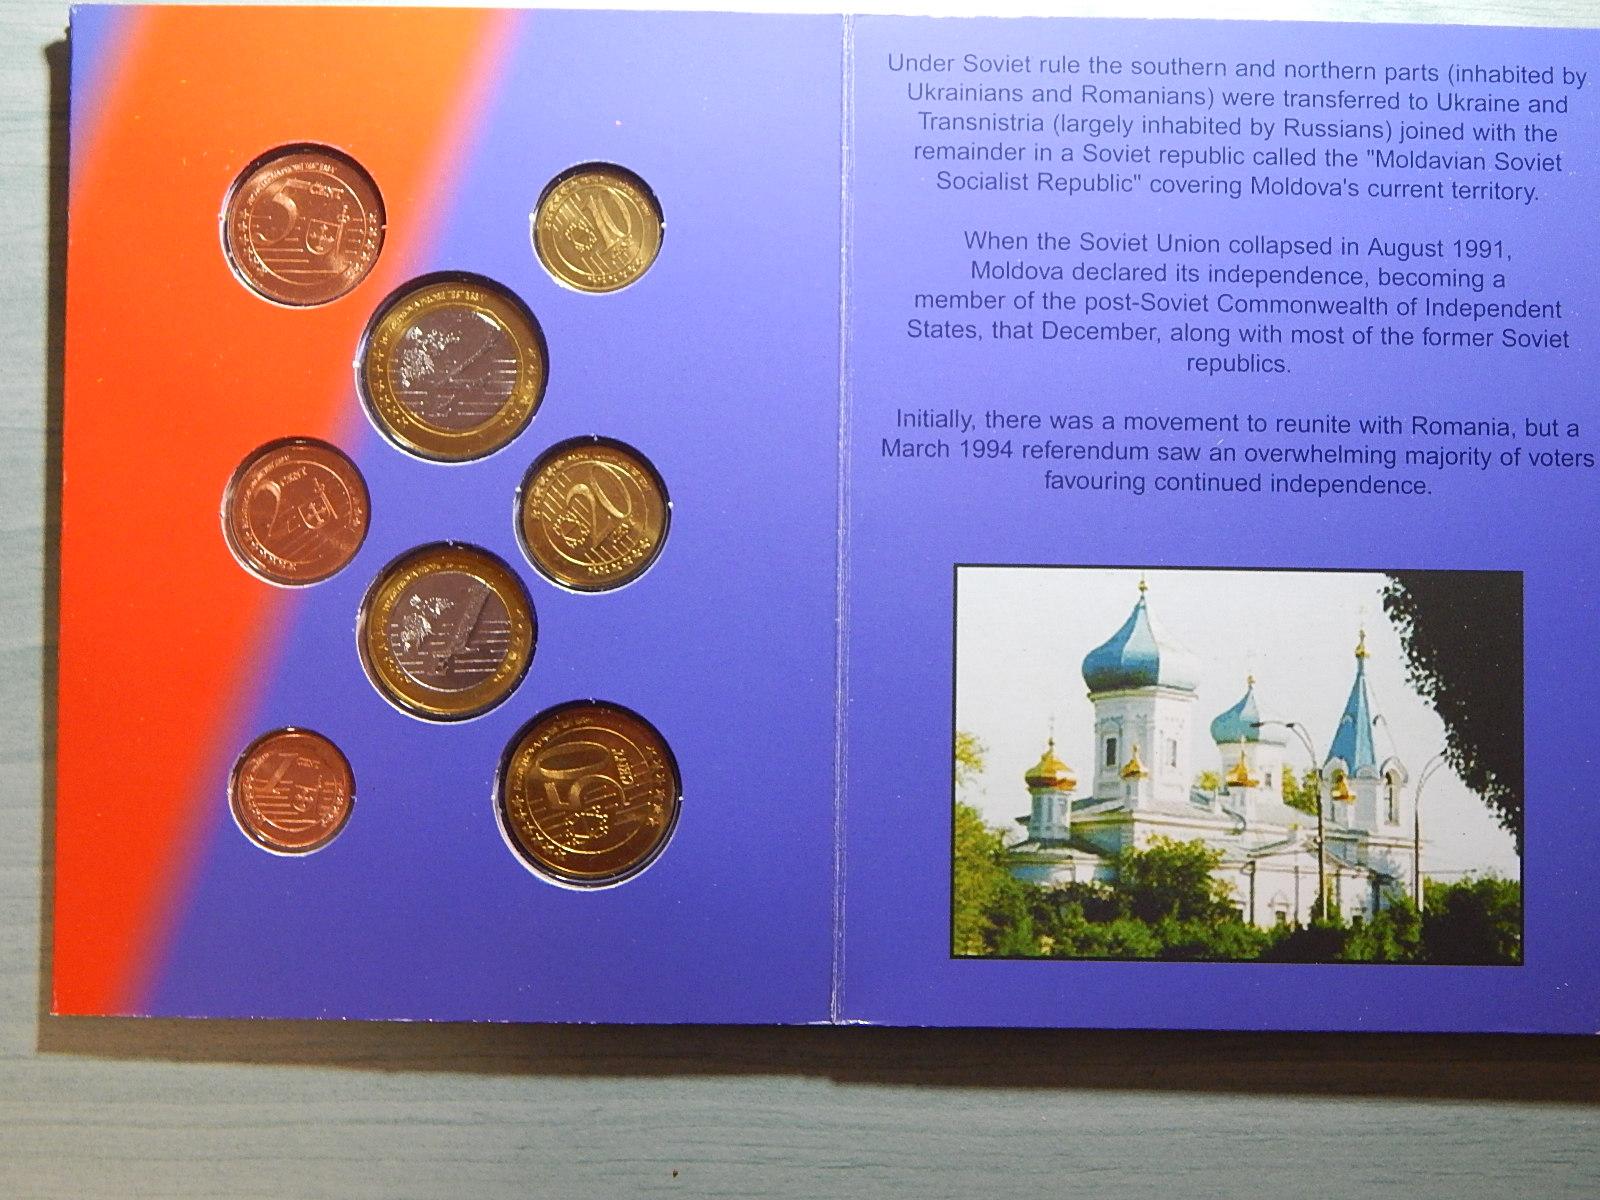 Moldávie EURO PROBE sada 2004 ve folderu UNC čKUF - Sběratelství